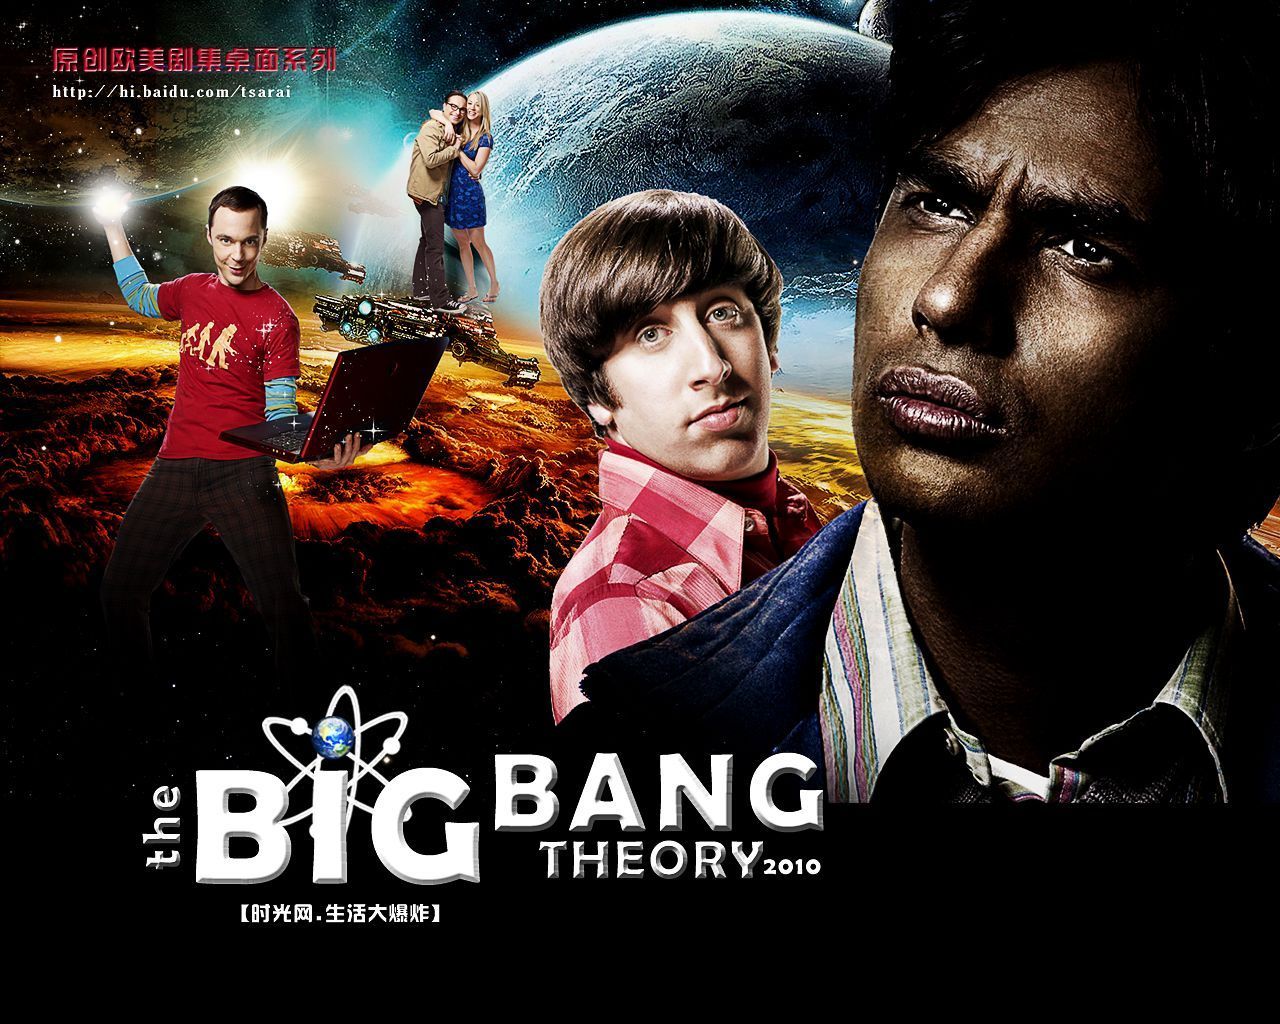 Big Bang Theory Wallpaper Funny